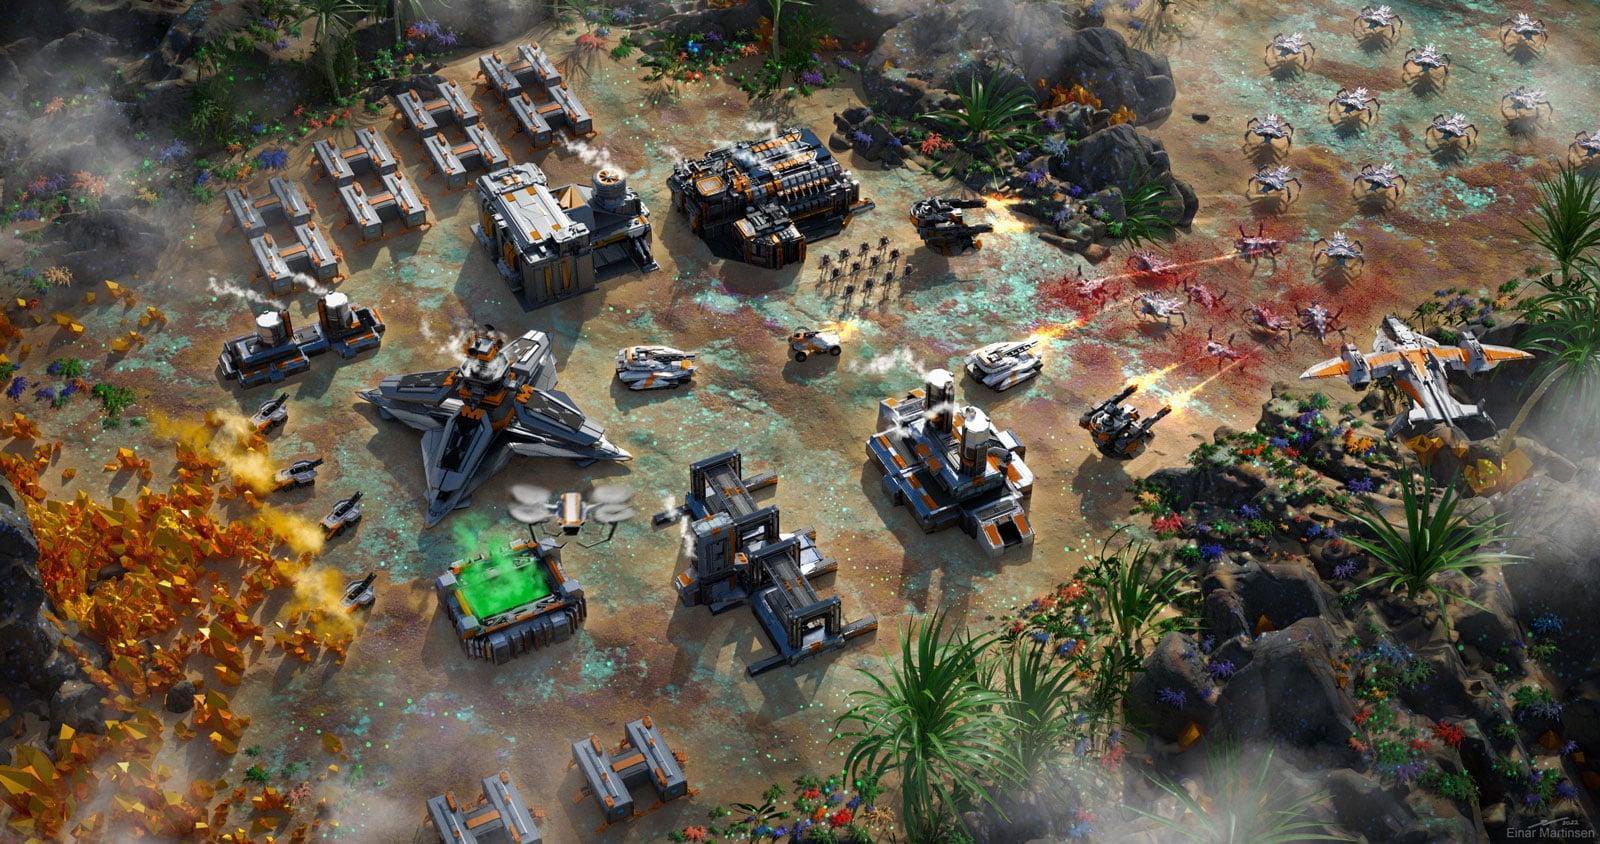 Een gratis te spelen klassiek realtime strategiespel (RTS) waarin spelers grondstoffen verzamelen, legers leiden en strijden in de sciencefictionwereld van Thalon.